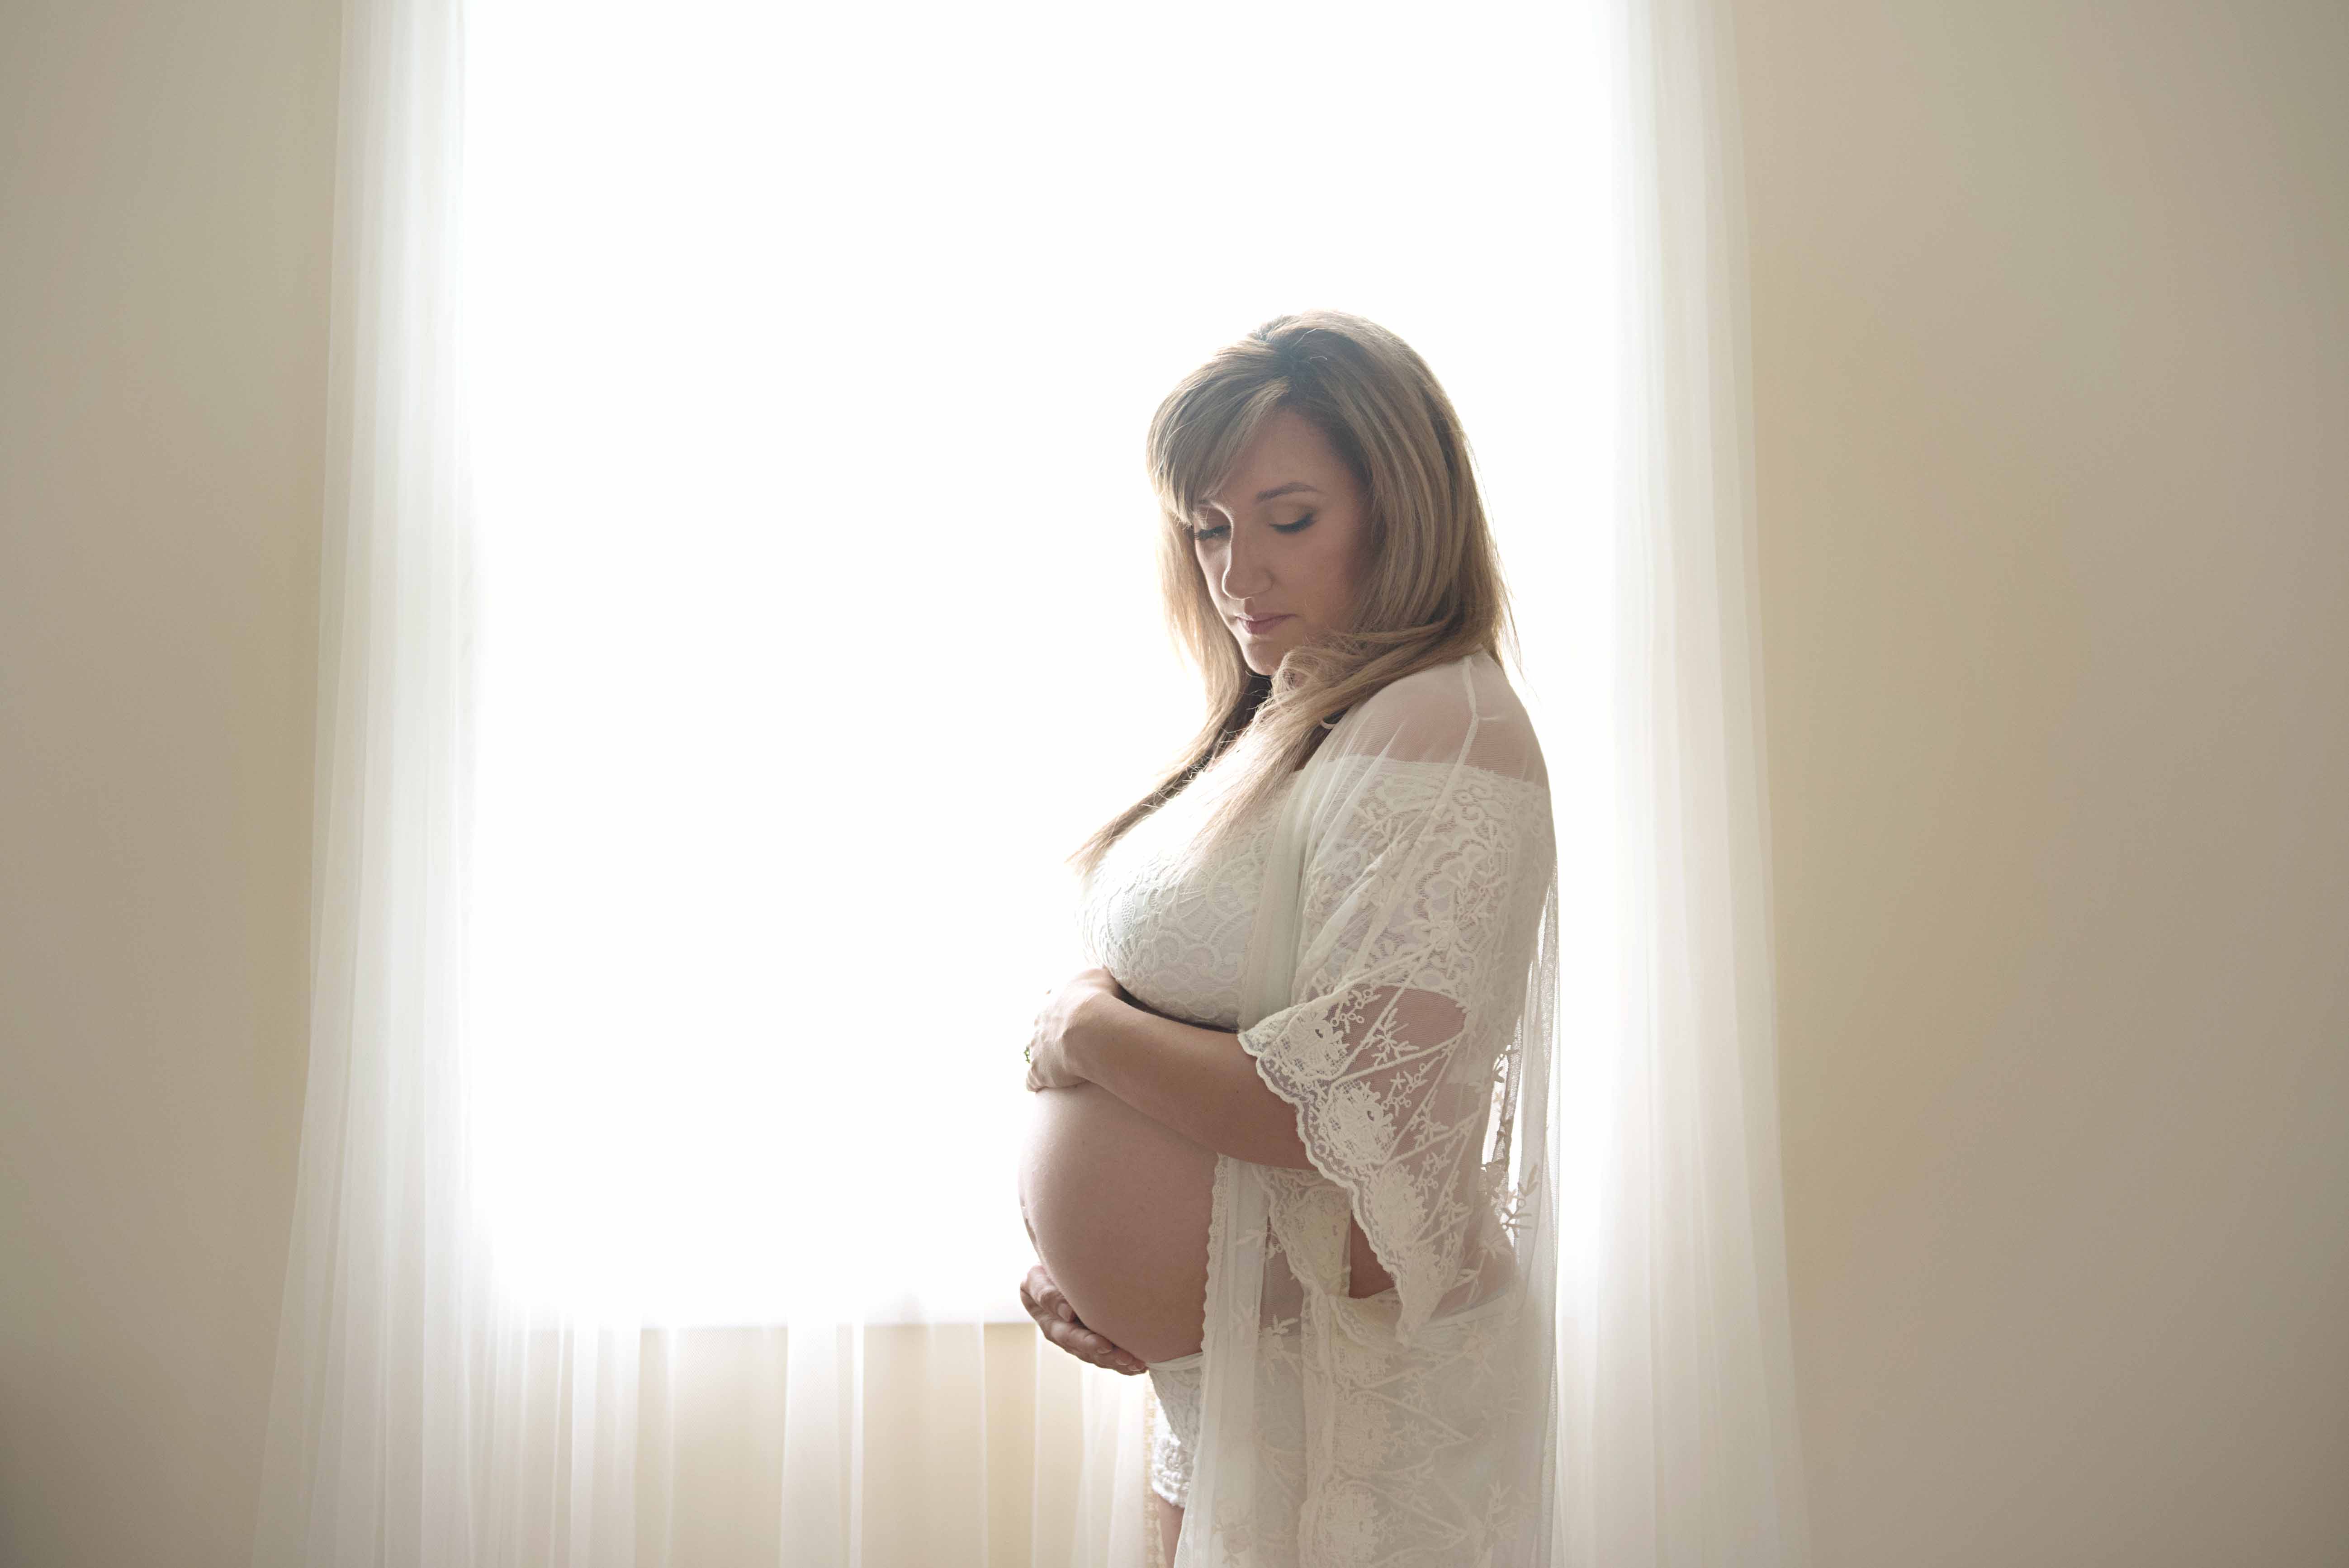 maternity photographer albany ny